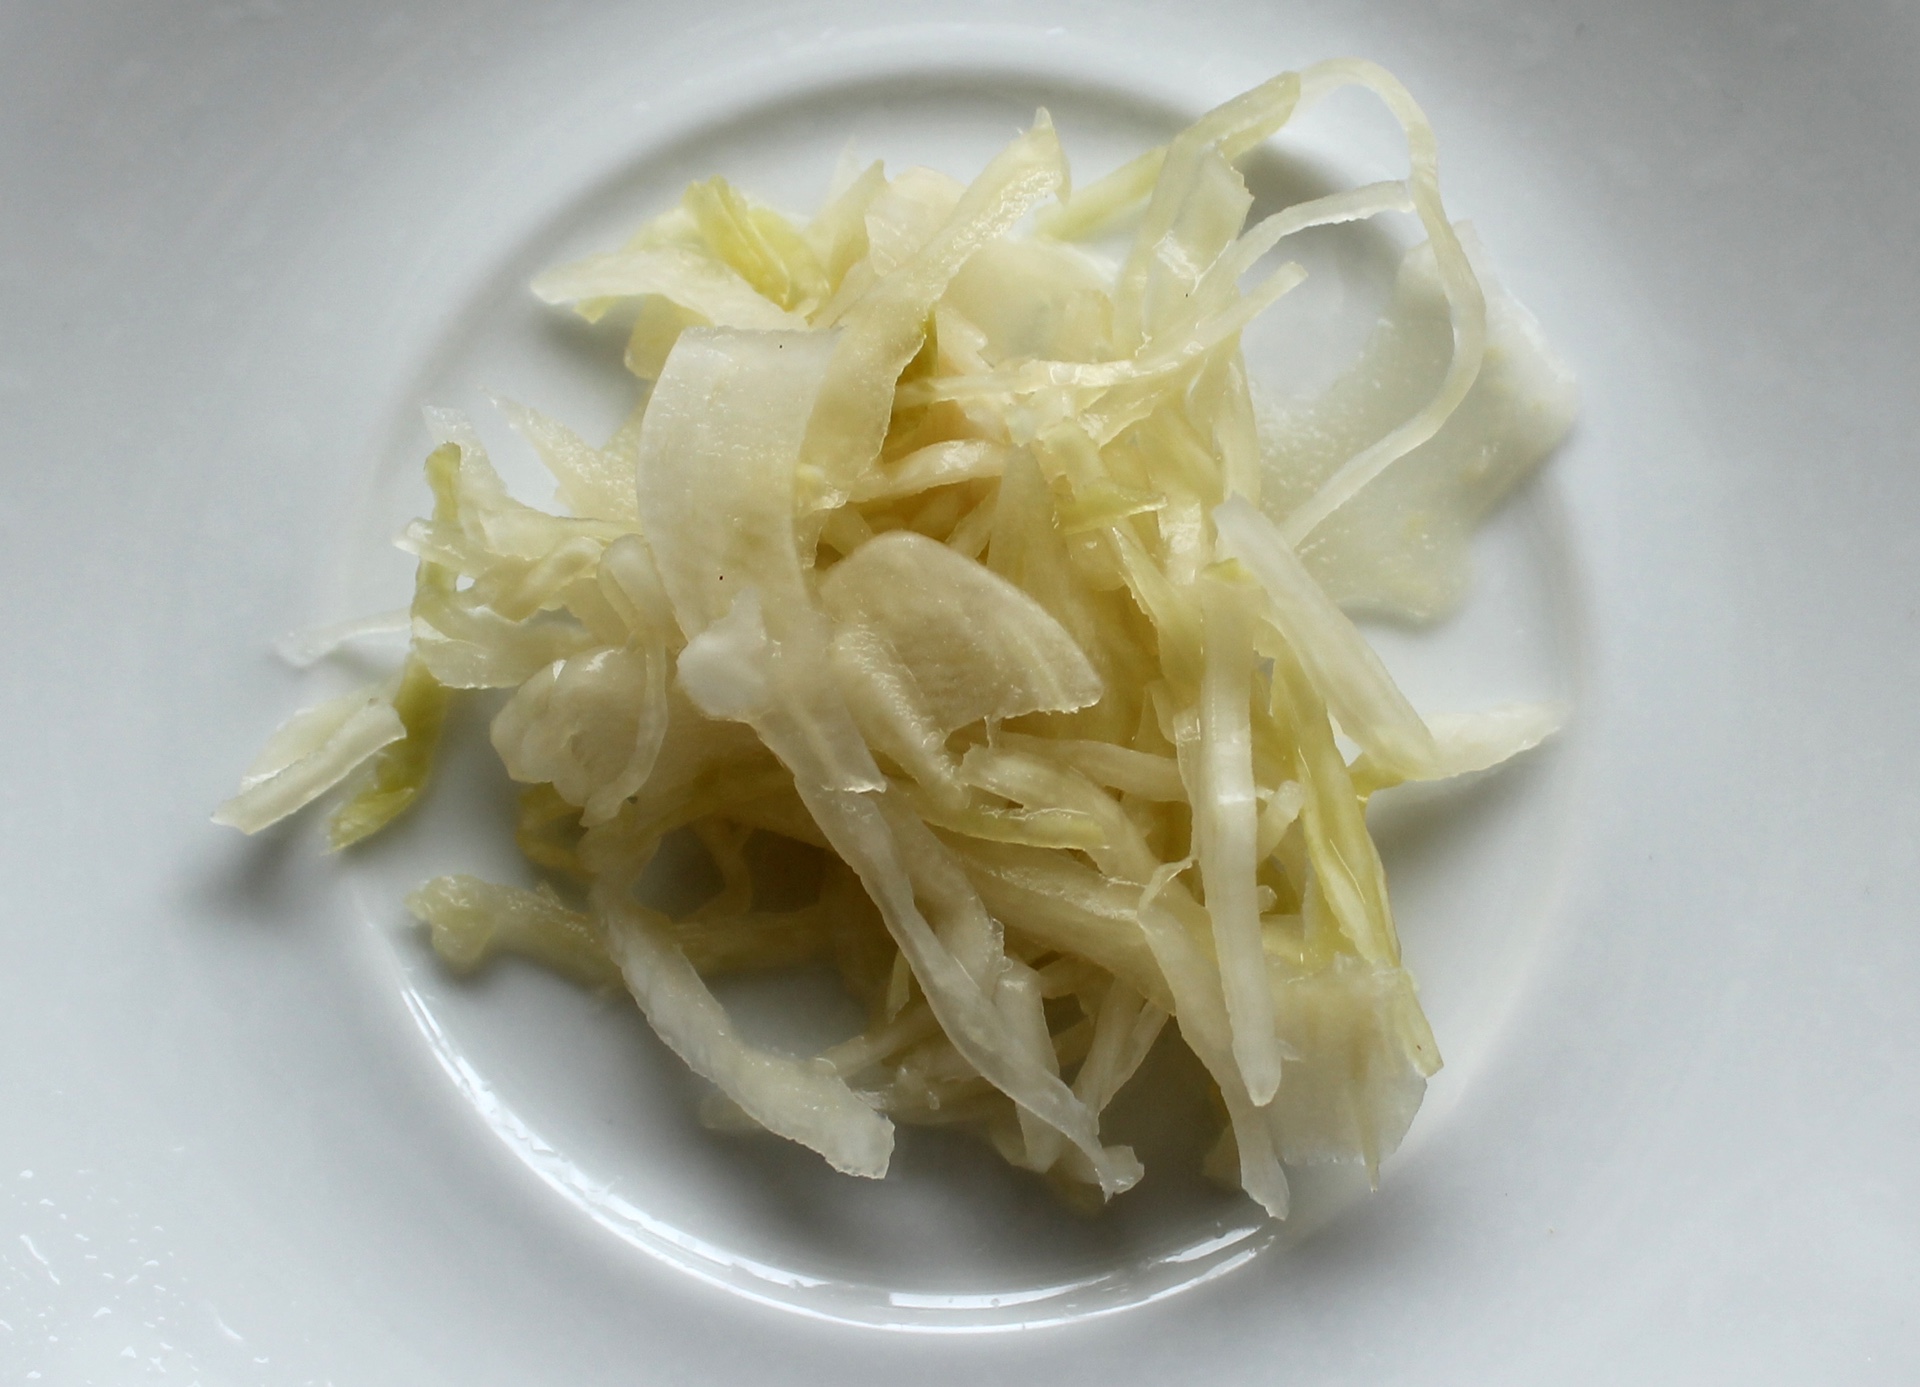 Bubbies’ sauerkraut is extra-crisp and mild in flavor.